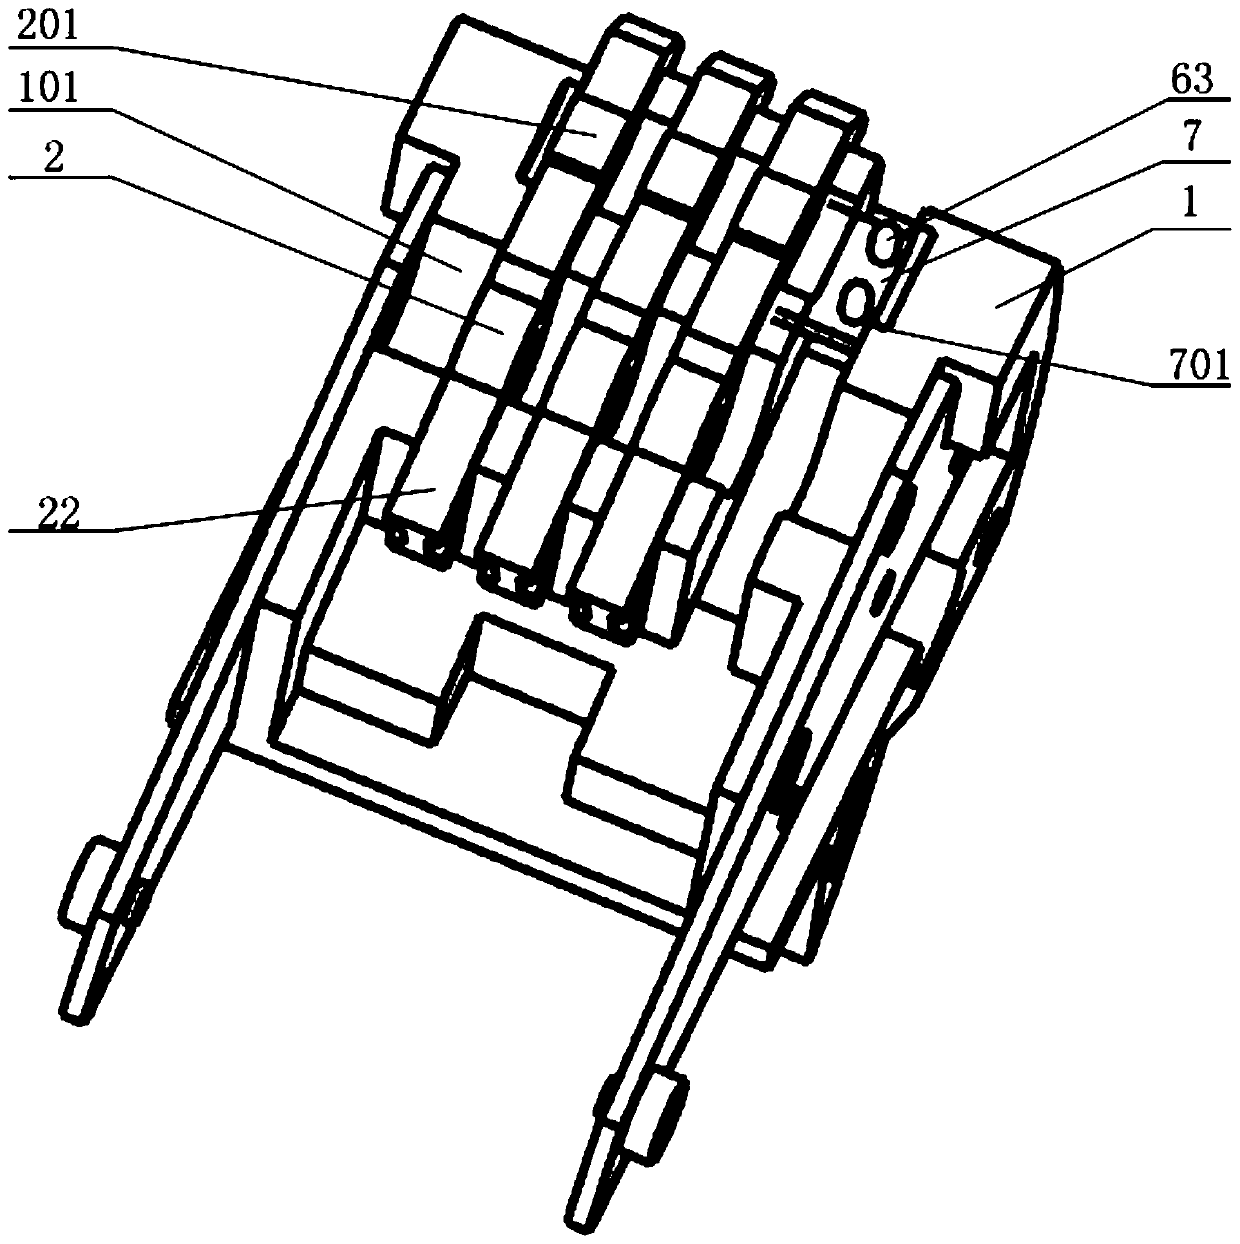 Contact mechanism of universal circuit breaker